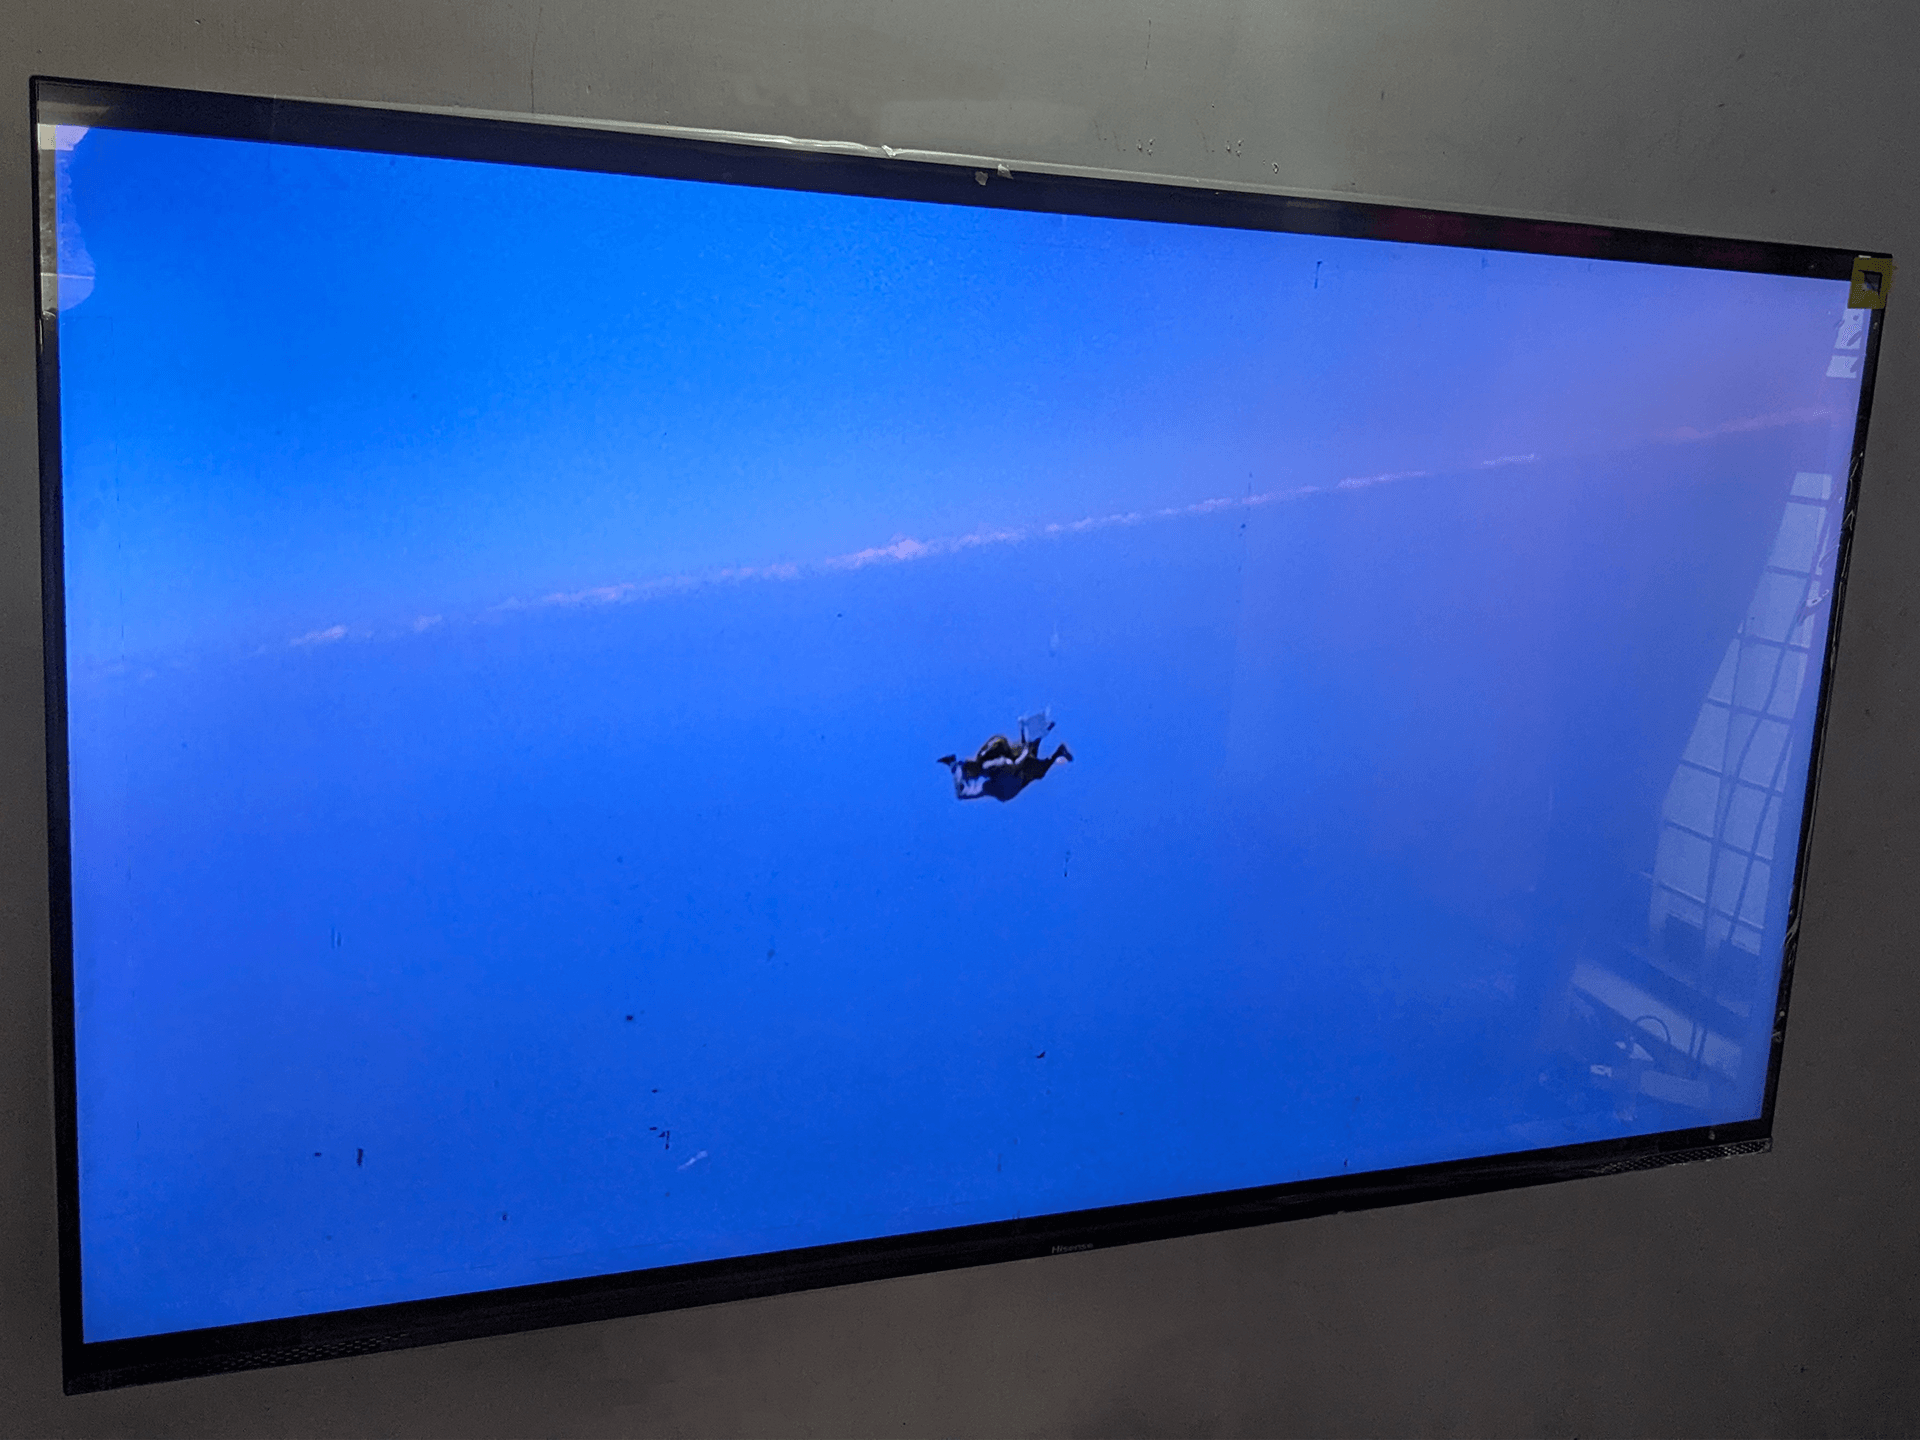 Hisense Tornado E7K Pro QLED Gaming TV has a VA QLED panel with 400 nits brightness with good viewing angles